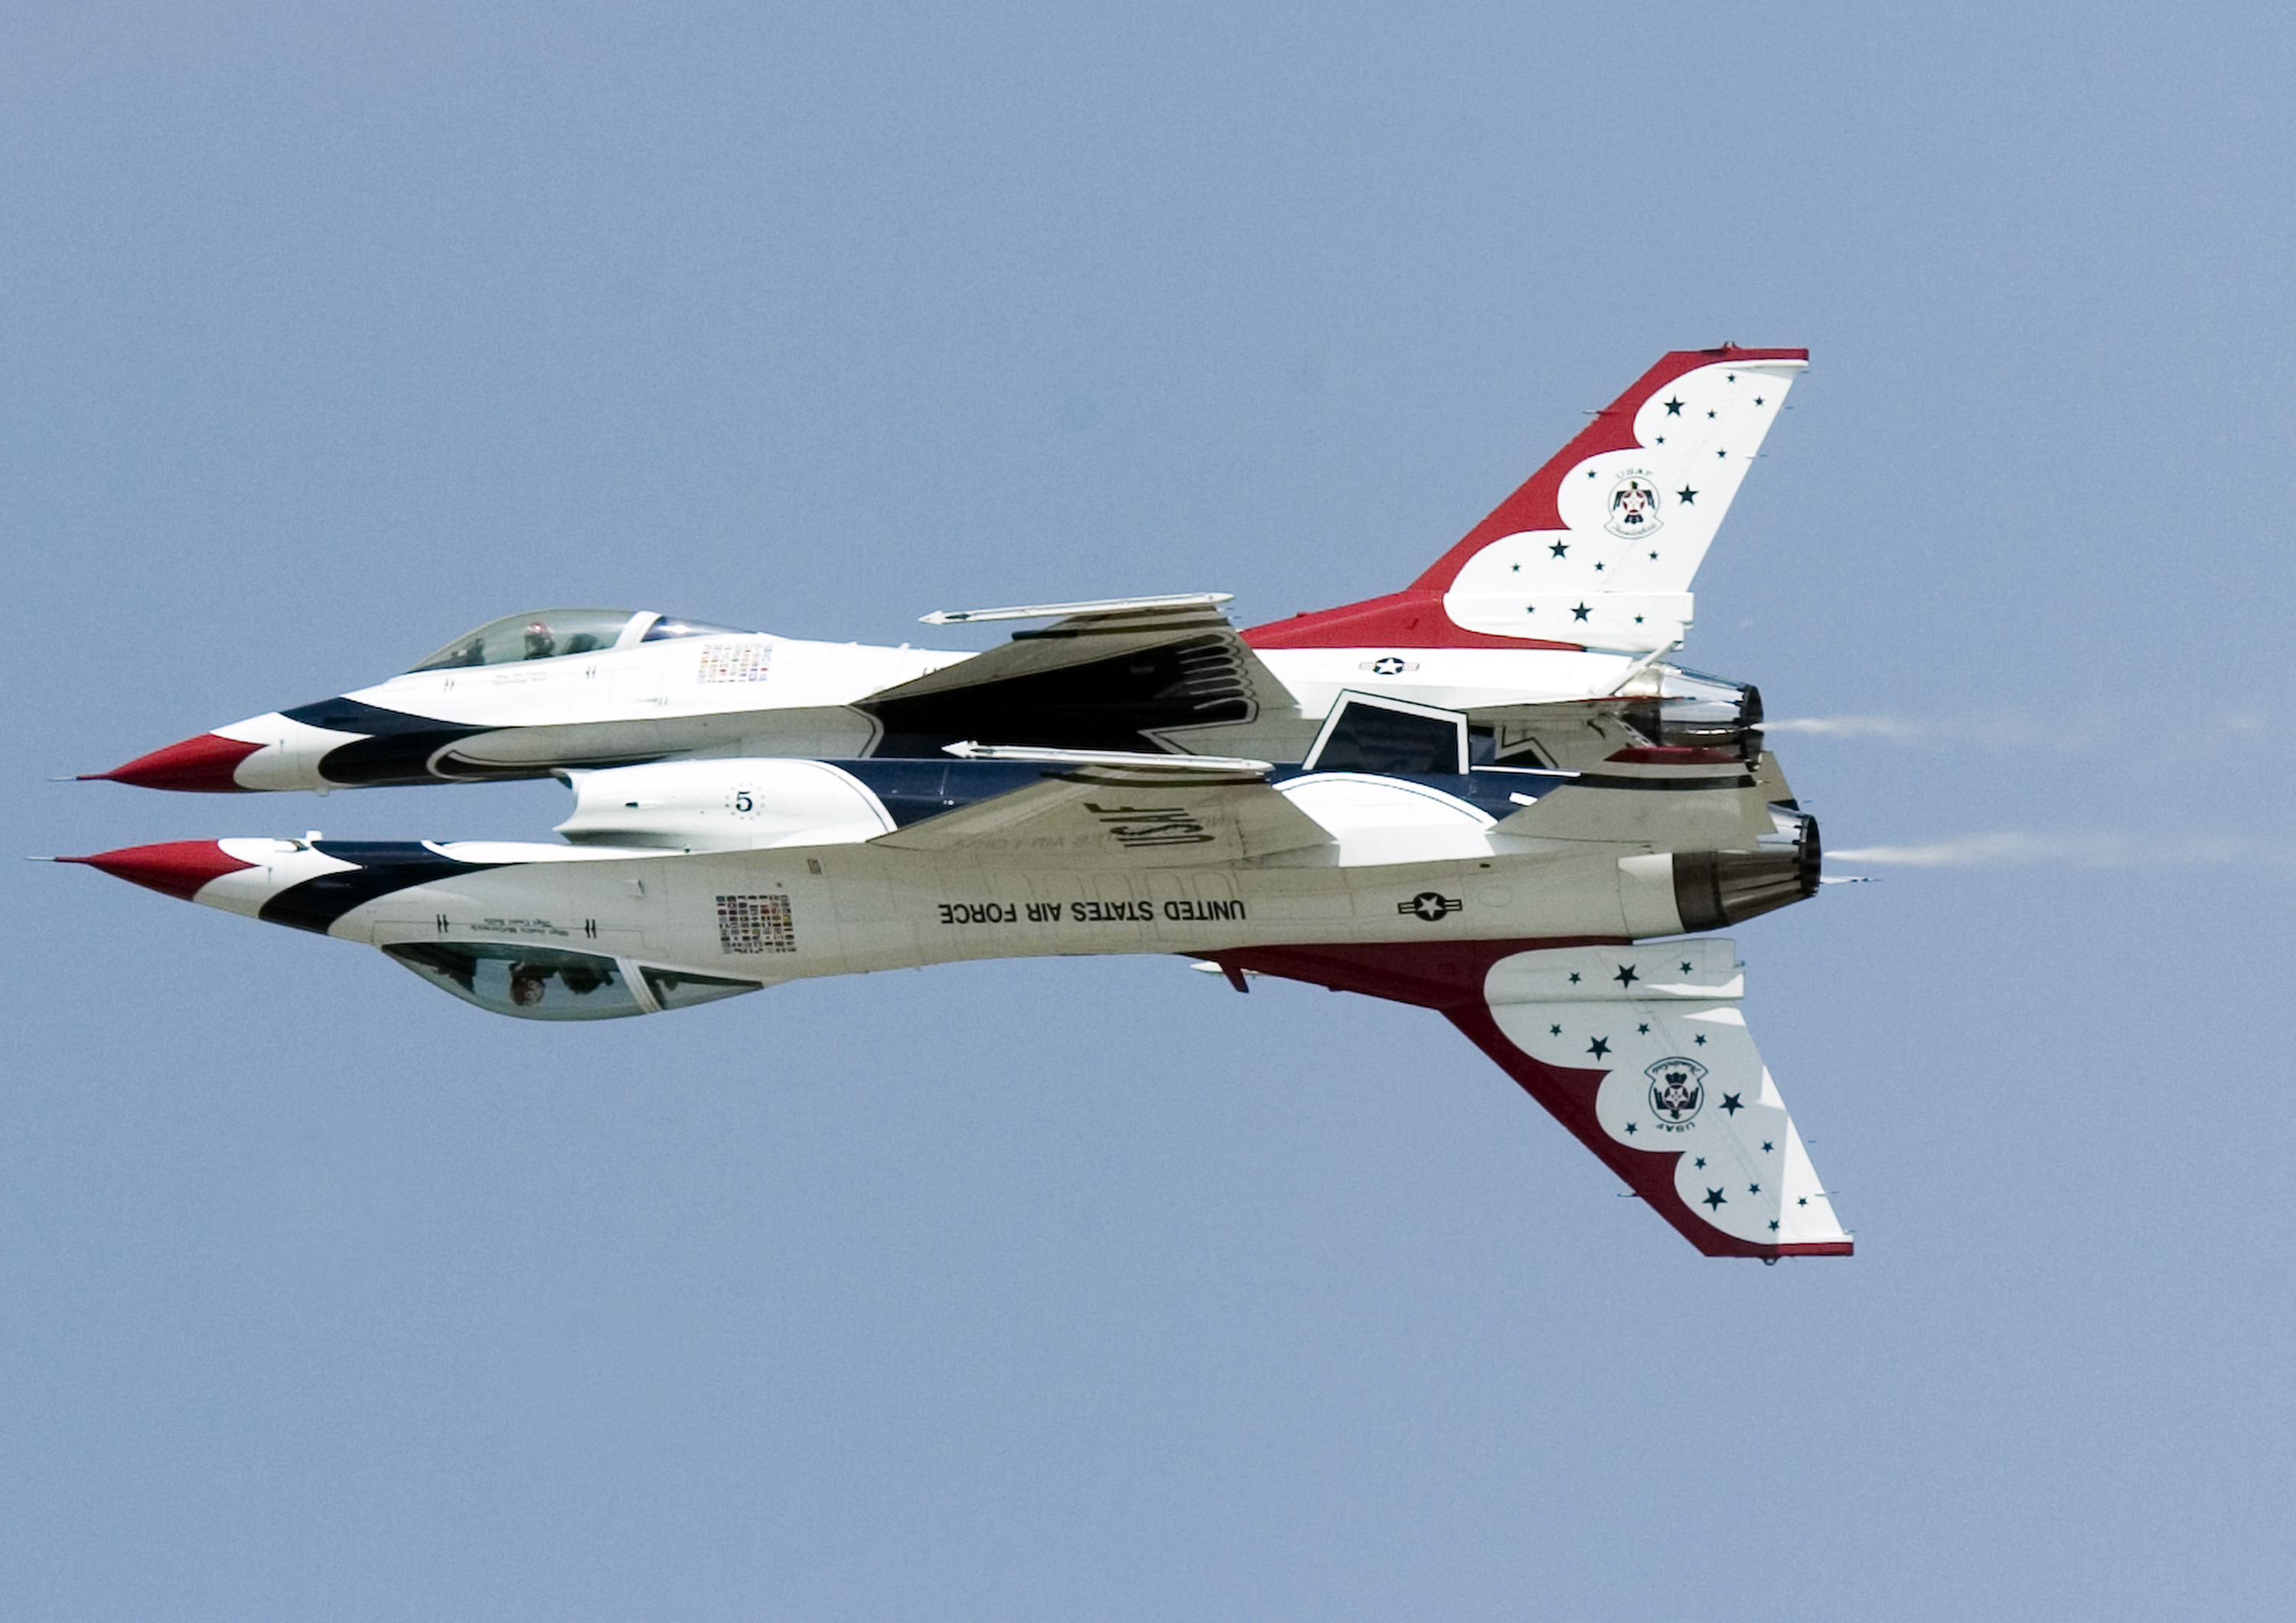 Thunderbirds > U.S. Air Force > Fact Sheet Display